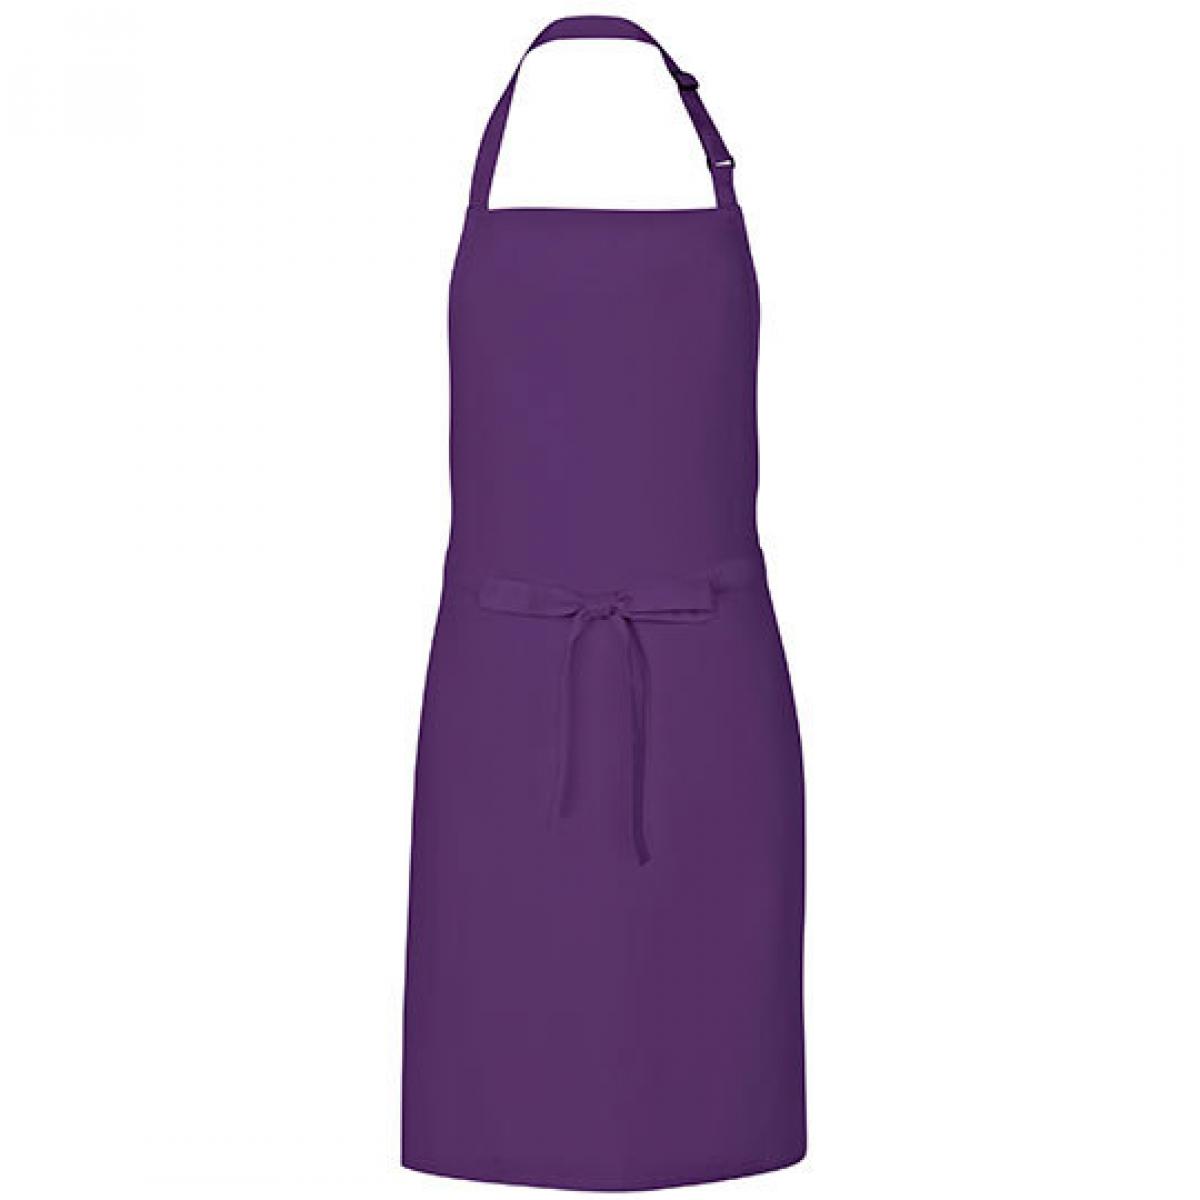 Hersteller: Link Kitchen Wear Herstellernummer: MS8572 Artikelbezeichnung: Multi Apron - 72 x 85 cm - Waschbar bis 60 °C Farbe: Purple (ca. Pantone 269)